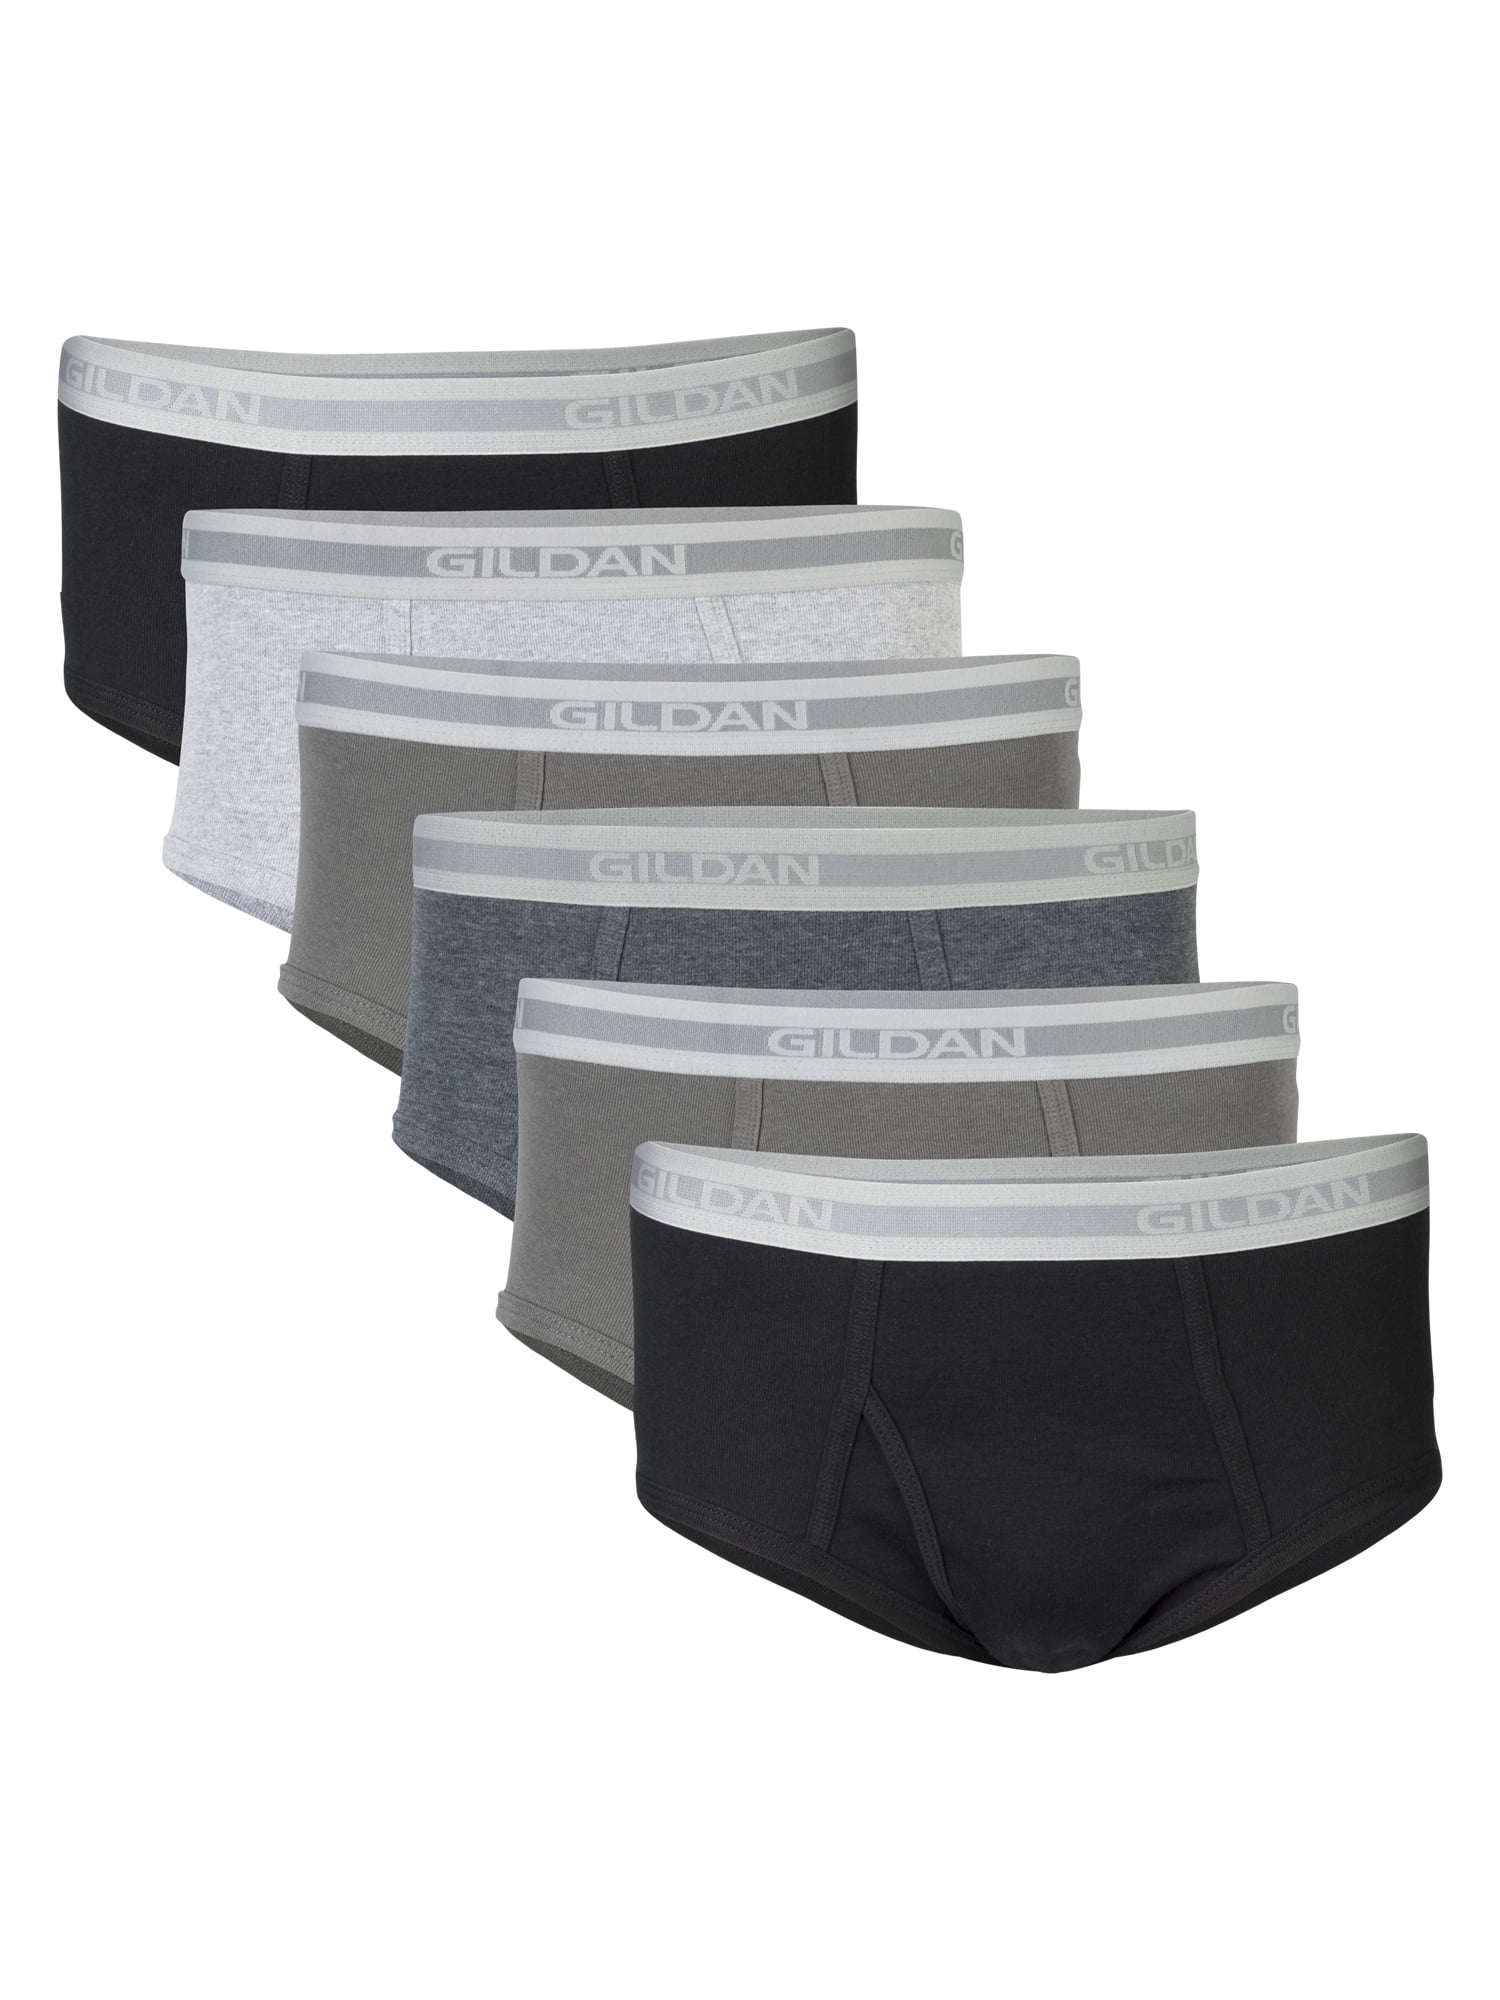 Buy Best Solid Cotton Inner Elastic Men Underwear and Briefs for Men